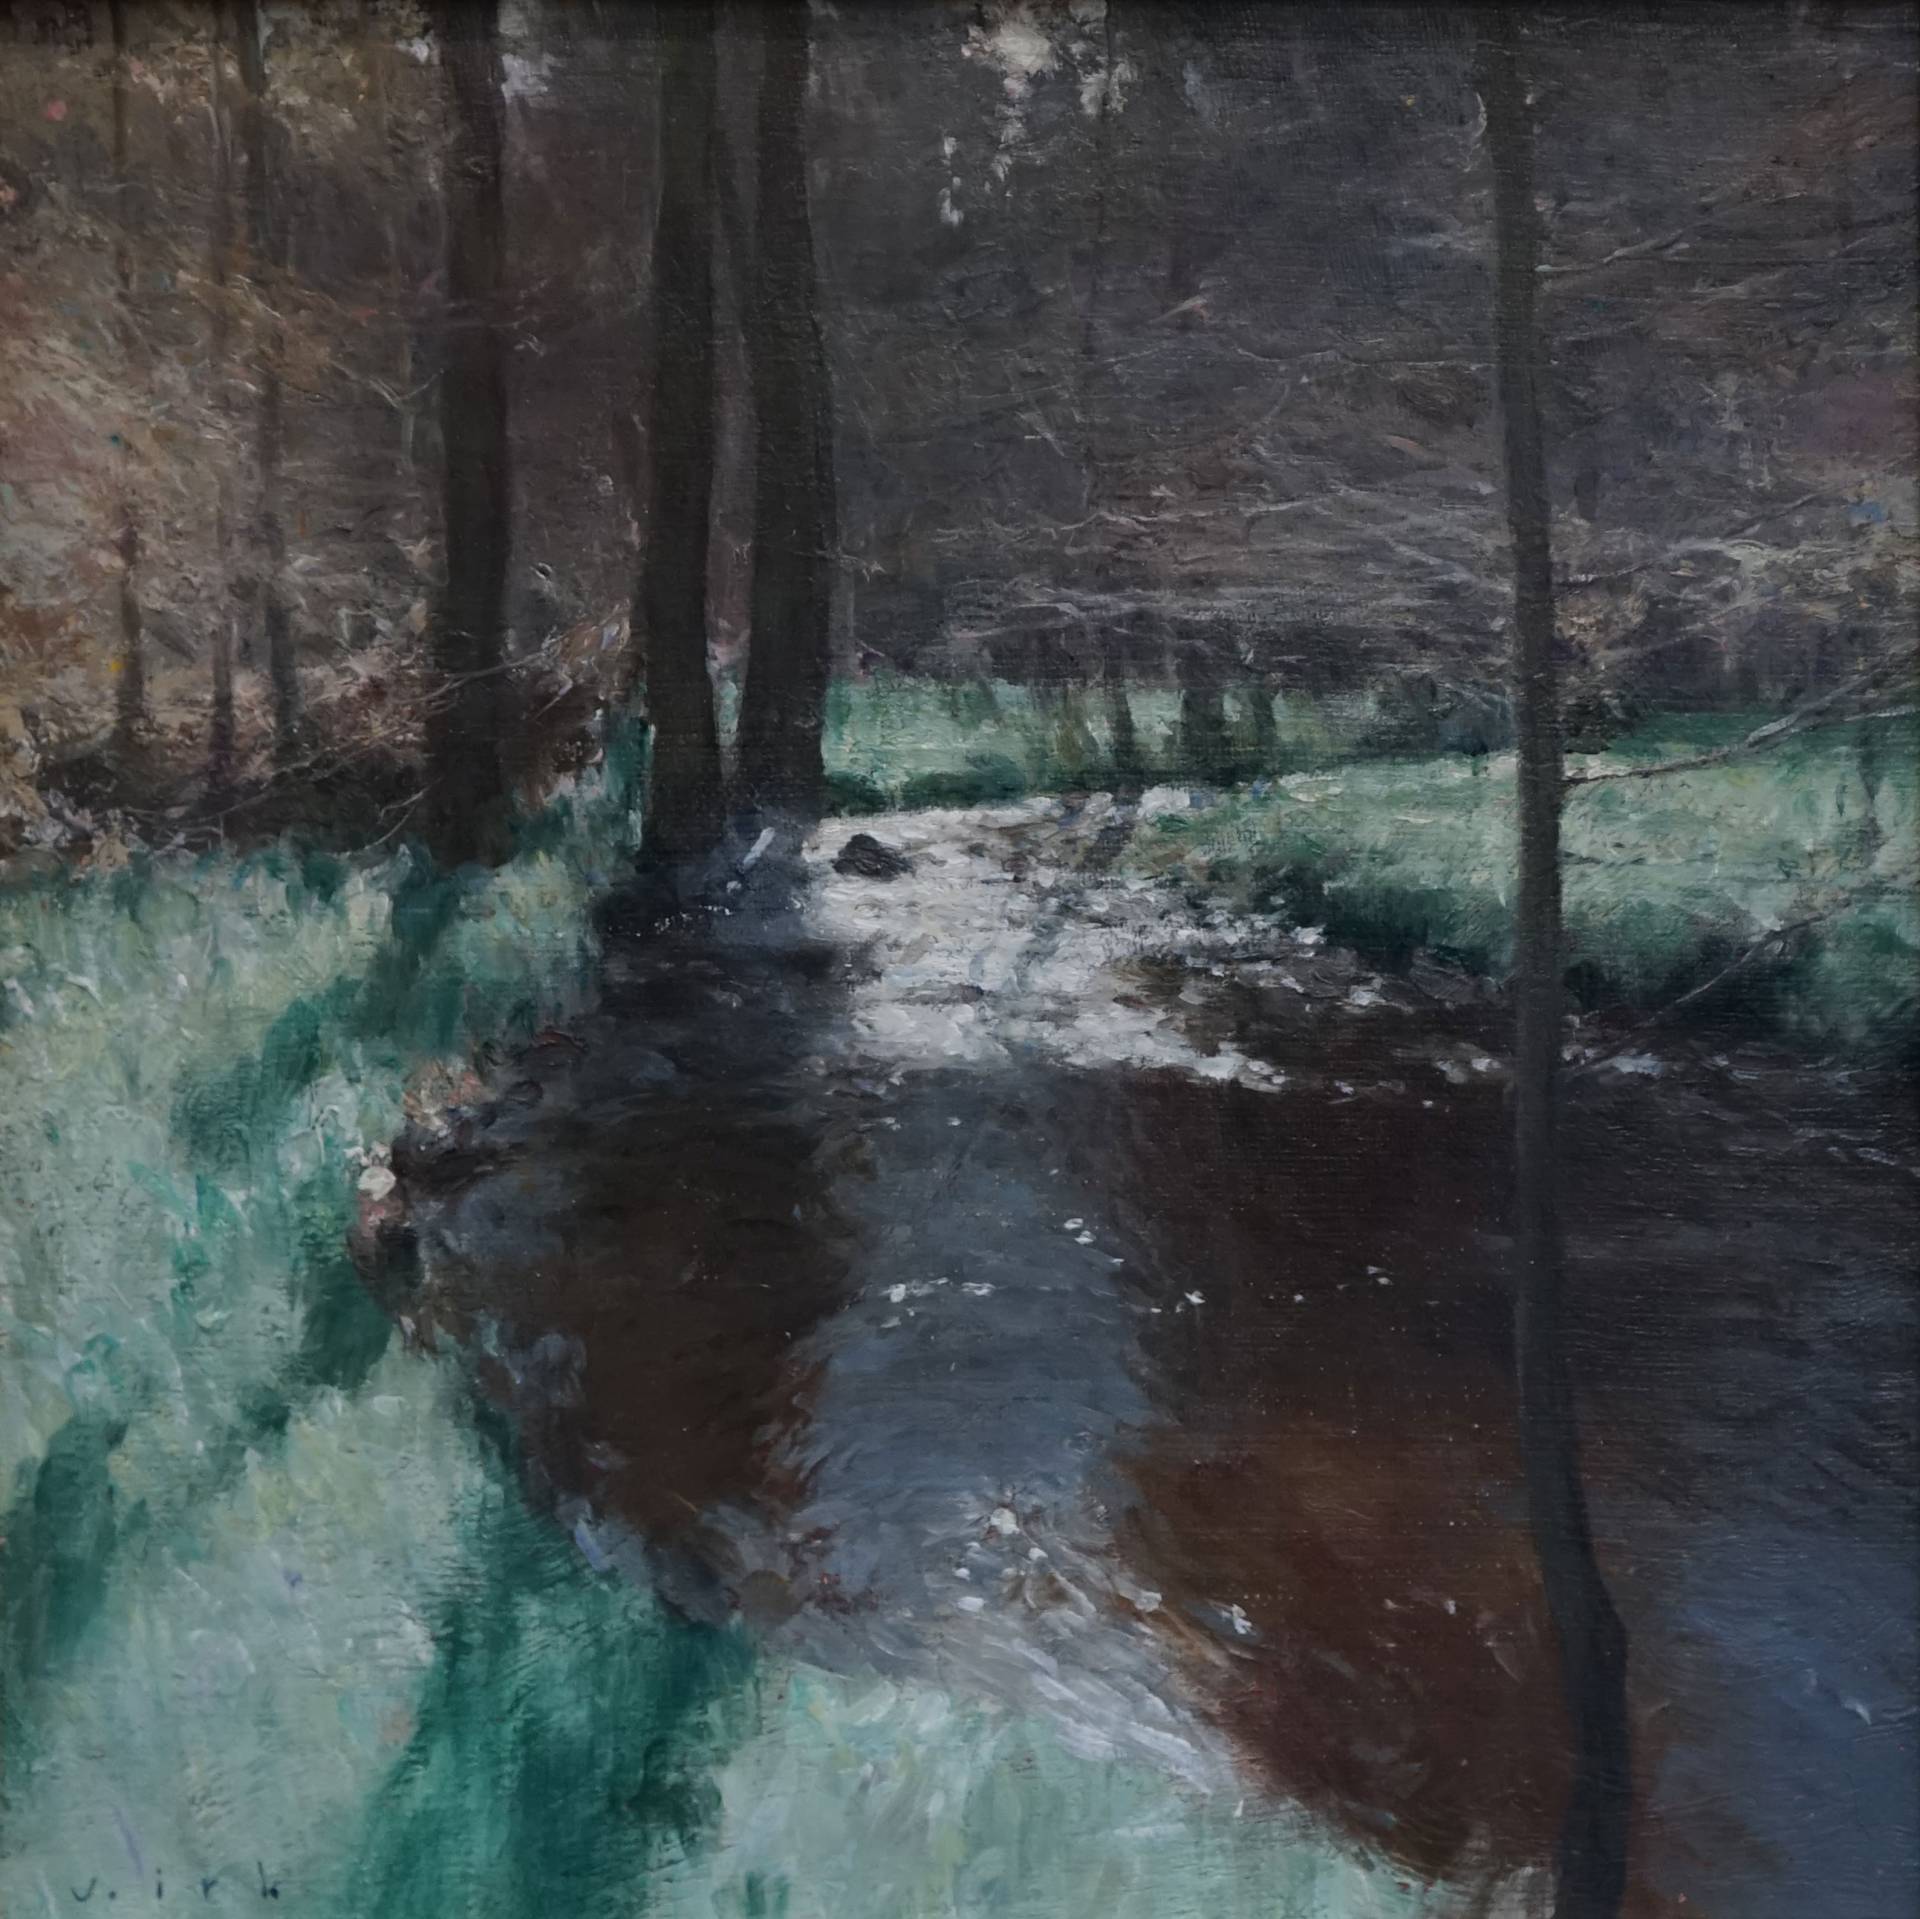 Morning in the forest - 1, Vladimir Kirillov, Buy the painting Oil